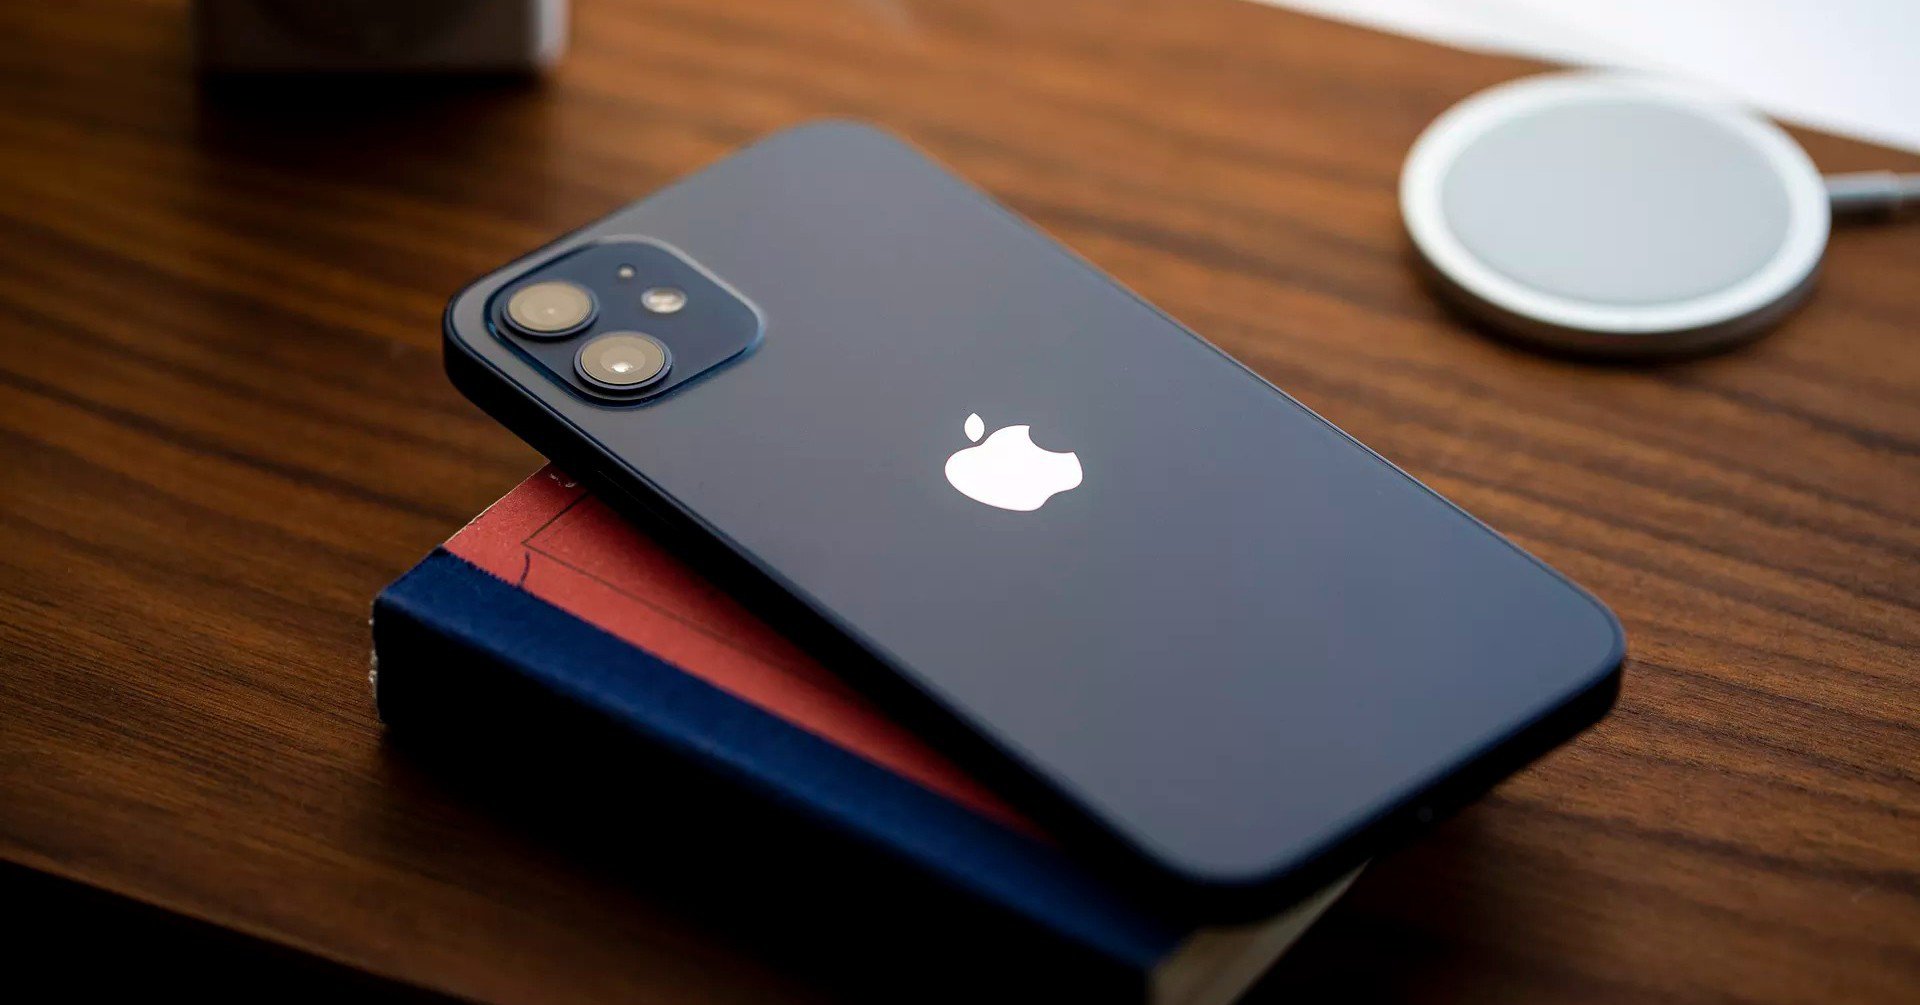 Mẫu iPhone đáng mua hiện nay trong tầm giá dưới 9 triệu đồng - 1